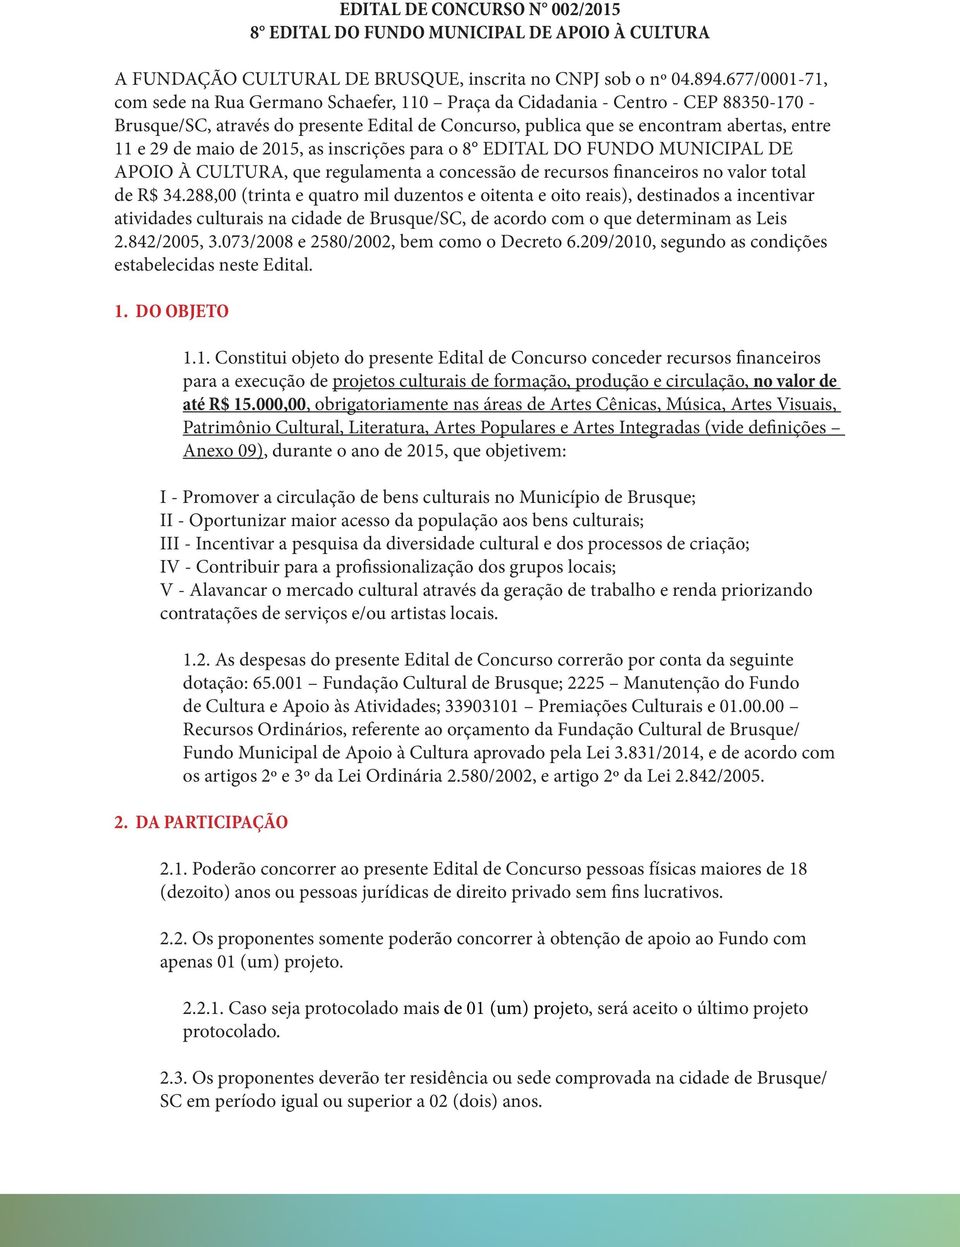 maio de 2015, as inscrições para o 8 EDITAL DO FUNDO MUNICIPAL DE APOIO À CULTURA, que regulamenta a concessão de recursos financeiros no valor total de R$ 34.